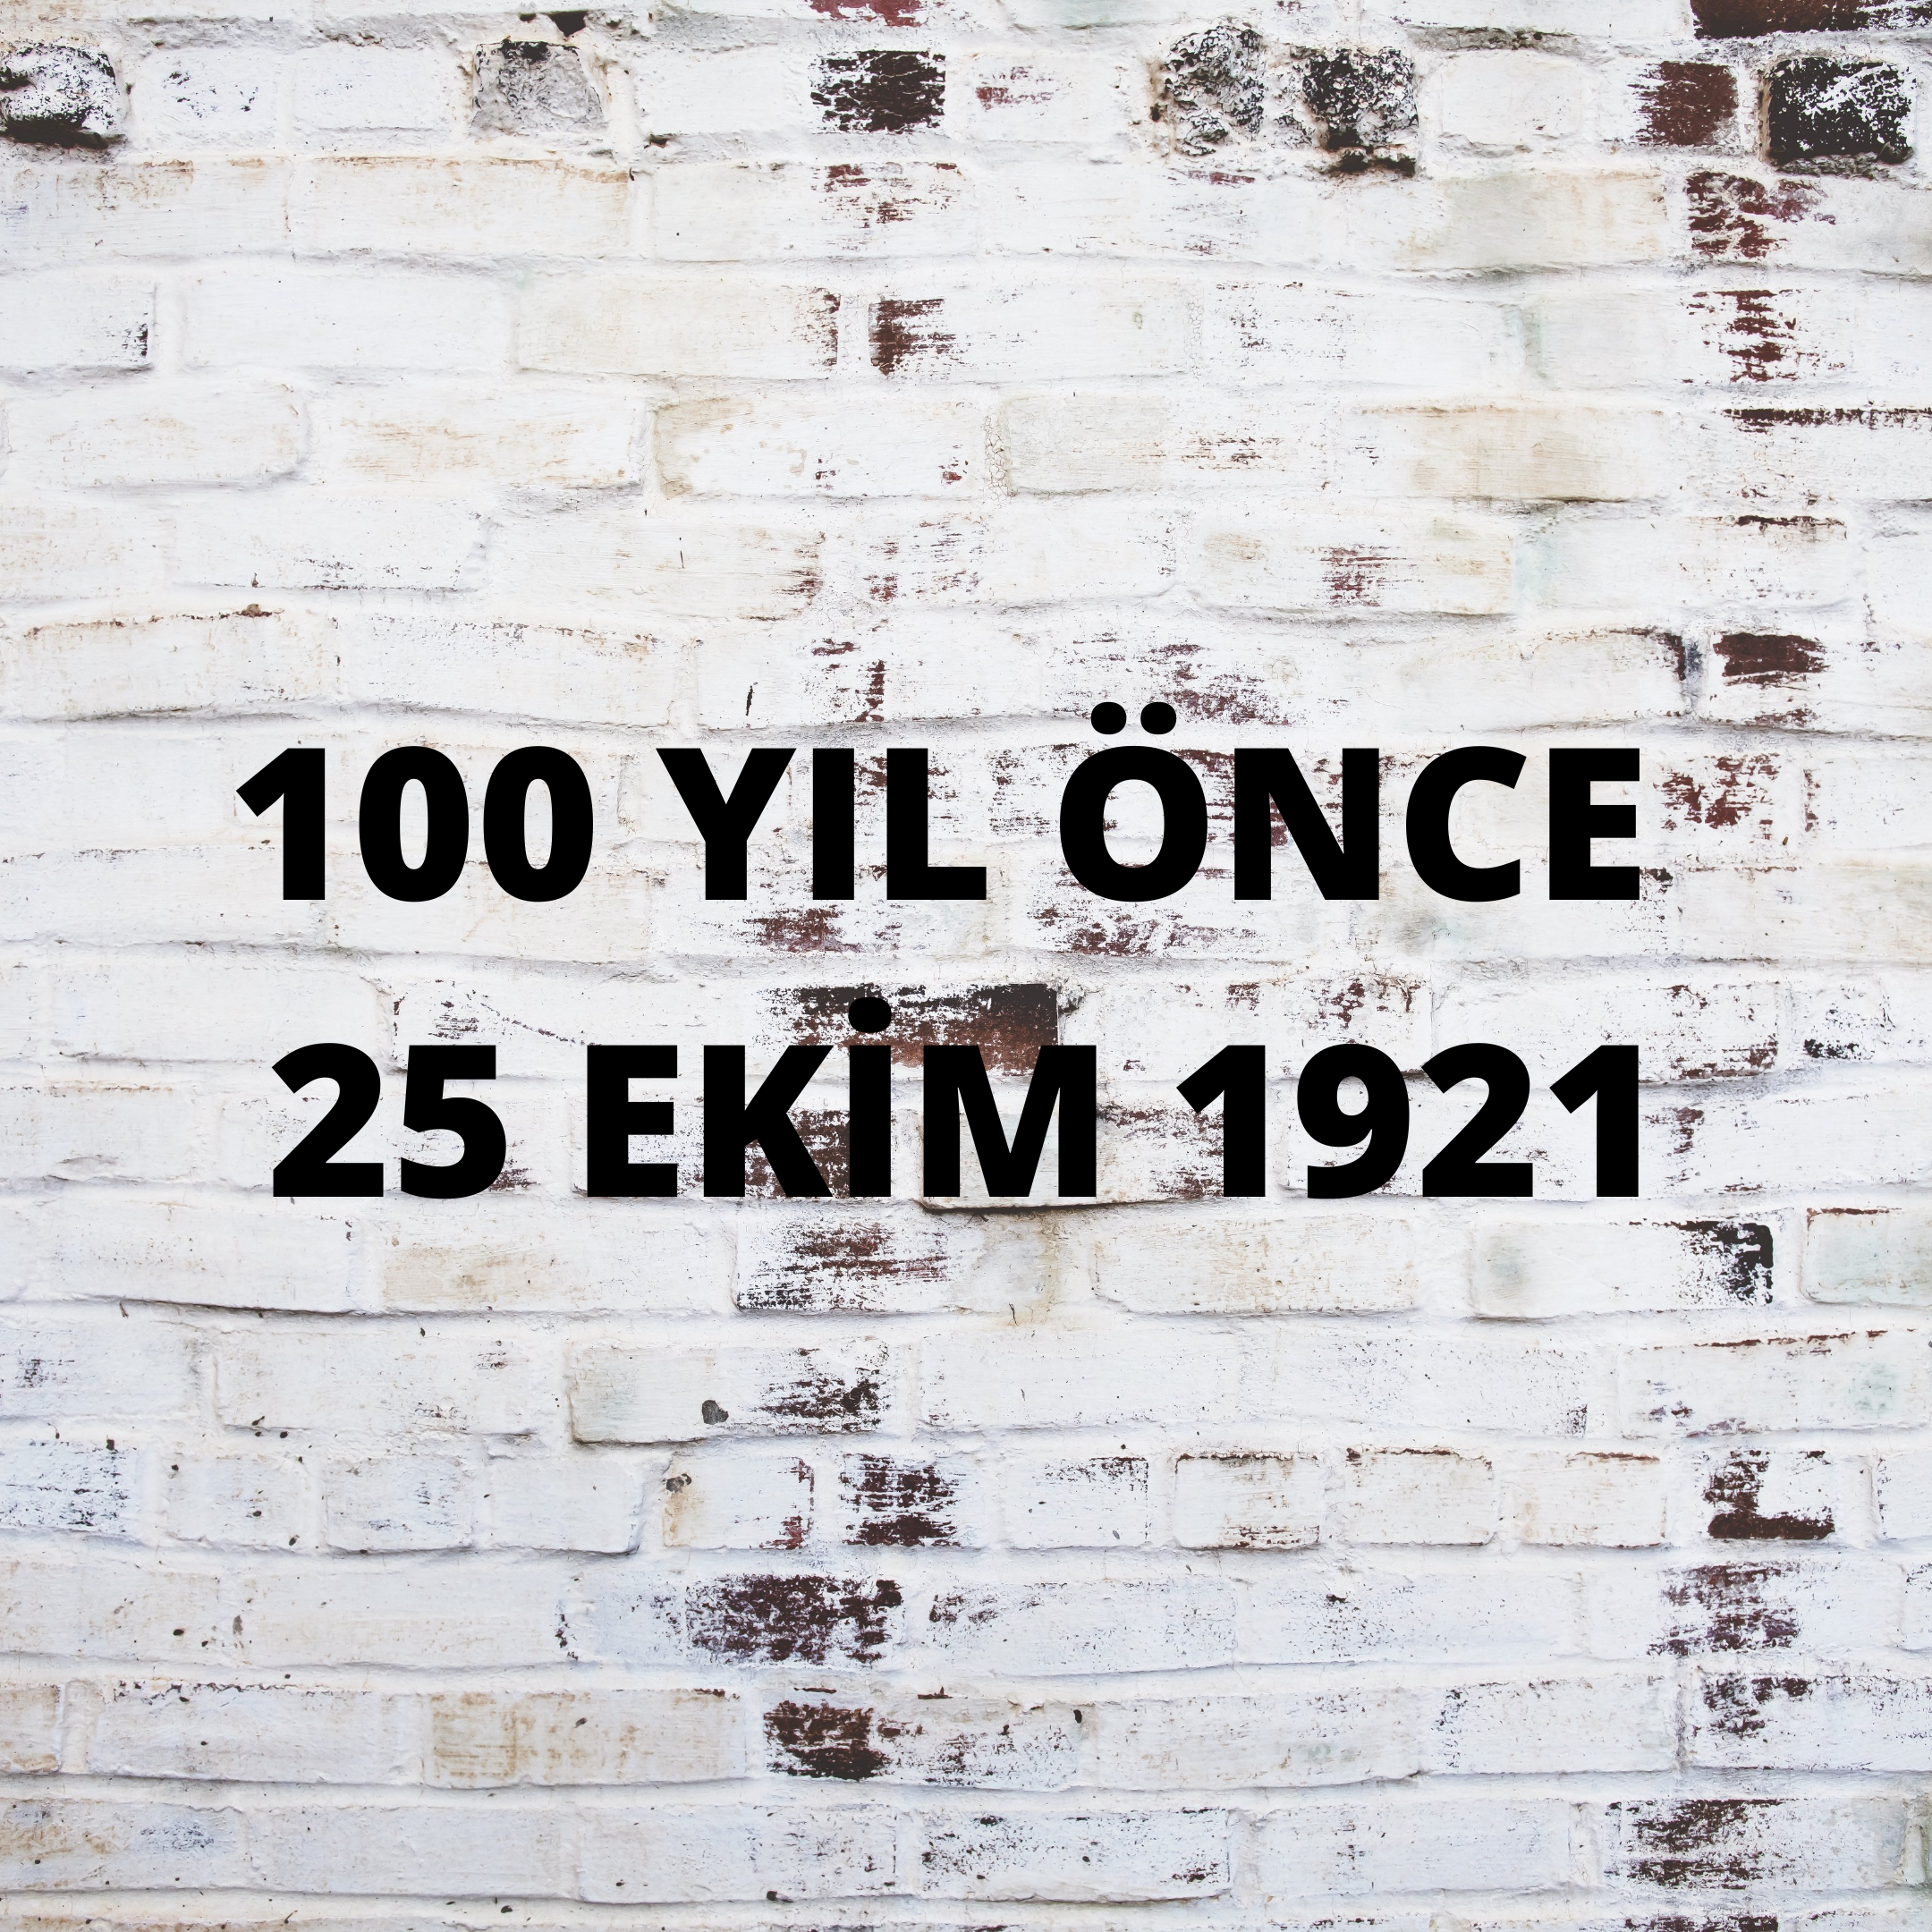 100 YIL ÖNCE 25 EKİM 1921